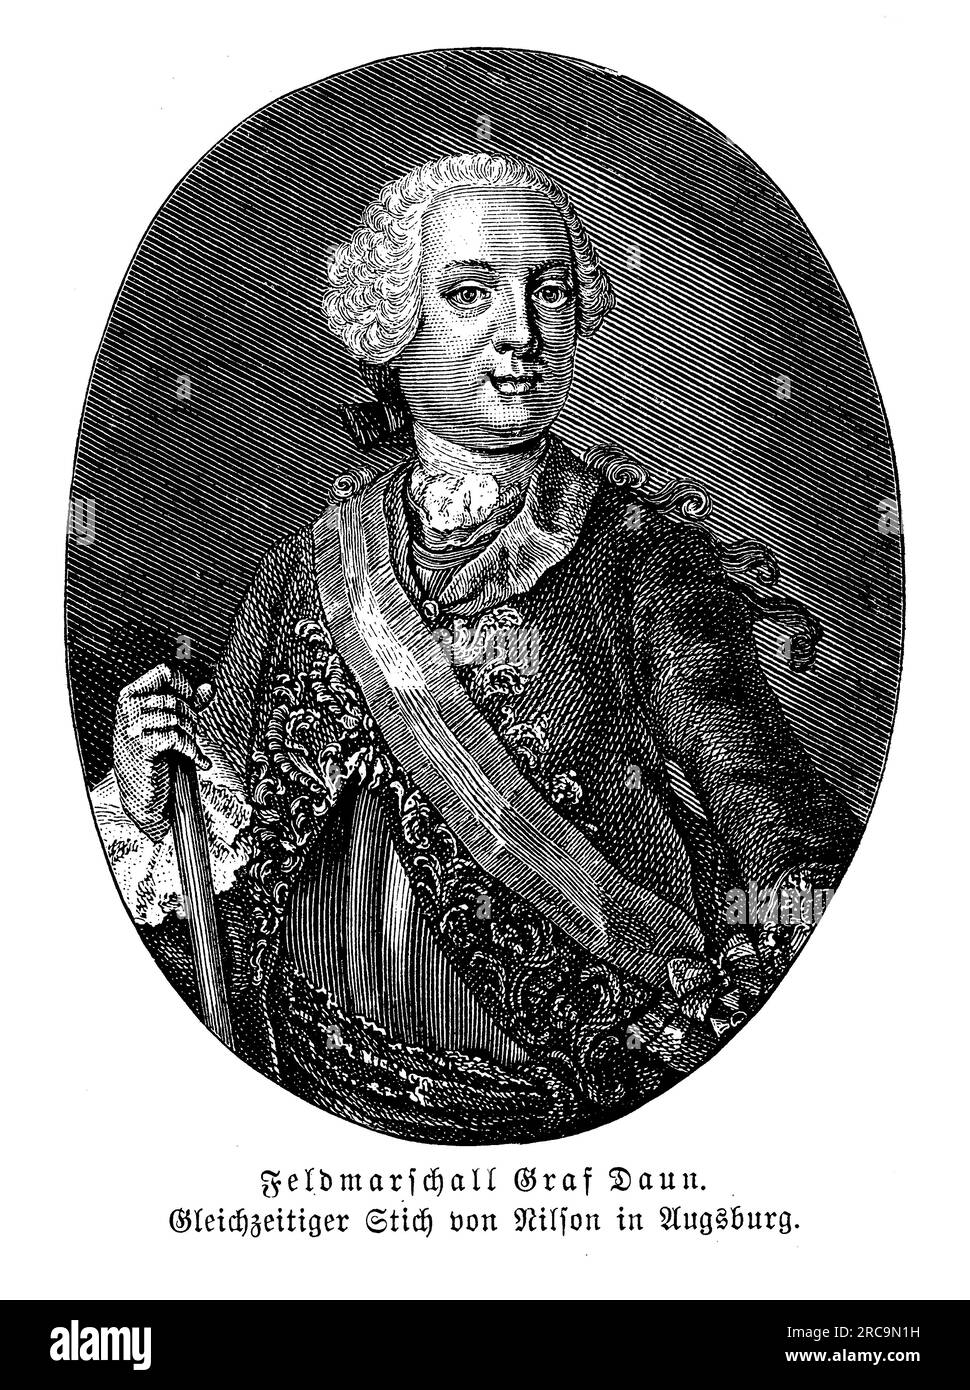 Porträt von Feldmarschall Leopold Josef Graf Daun, oft auch als Graf Daun bezeichnet, einem prominenten österreichischen Militärführer im 18. Jahrhundert. Er wurde am 24. Oktober 1705 geboren und diente in der Habsburgerarmee unter Kaiserin Maria Theresia und später unter Kaiser Joseph II. Graf Daun ist vor allem für sein Kommando während des Siebenjährigen Krieges bekannt, wo er eine entscheidende Rolle in mehreren bedeutenden Schlachten spielte. darunter die Schlacht von Kolin 1757 und die Schlacht von Maxen 1759. Er wurde für seine strategischen Fähigkeiten und seine Abwehrtaktiken hoch geschätzt. Stockfoto